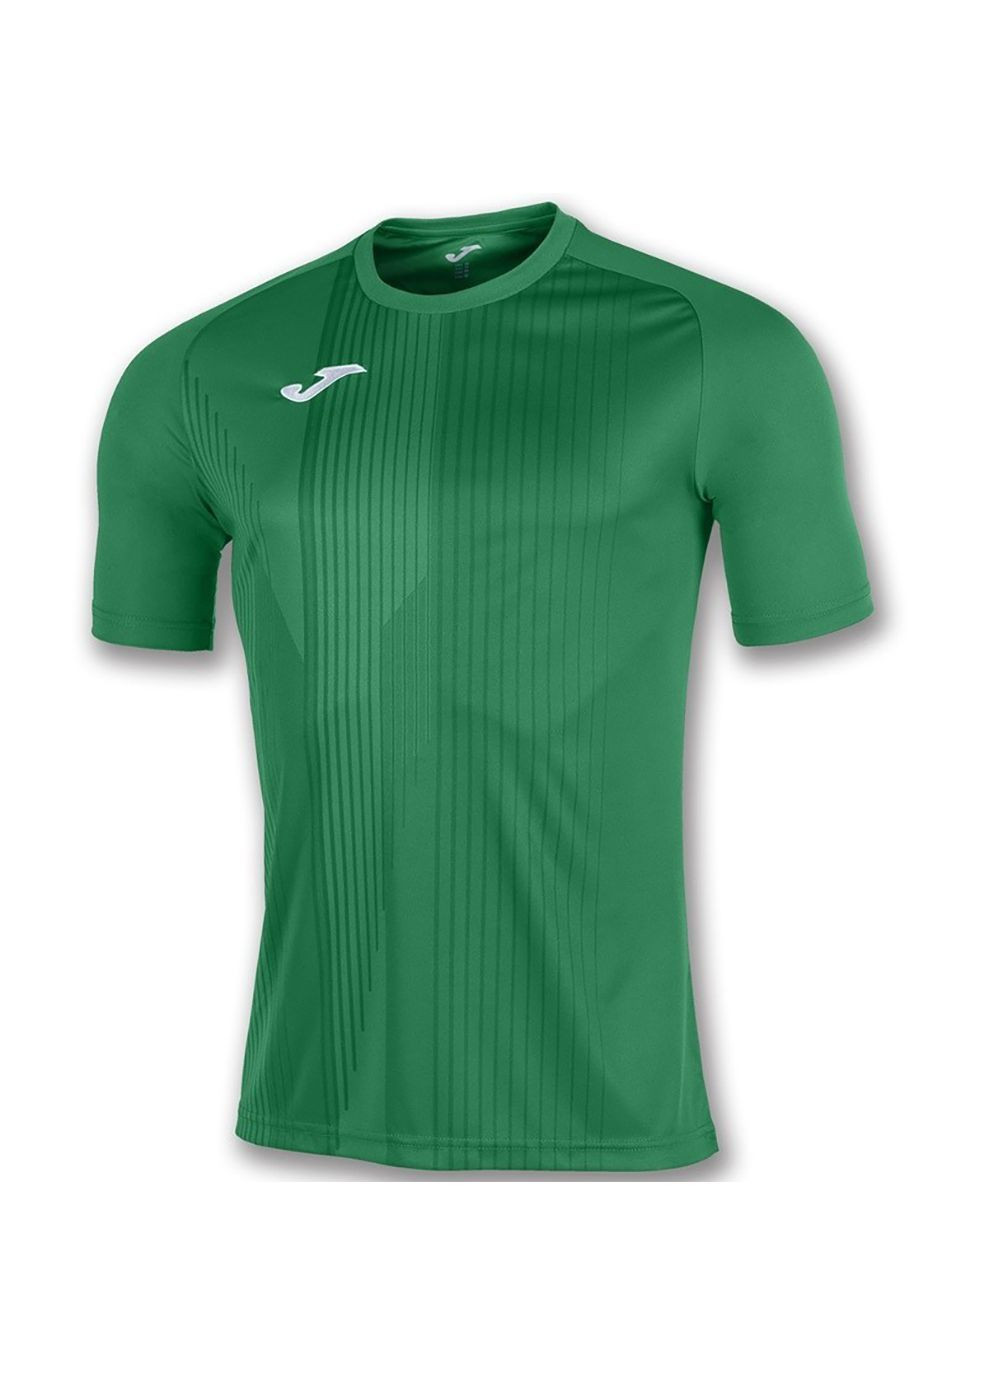 Зеленая демисезонная футболка tiger зеленый Joma